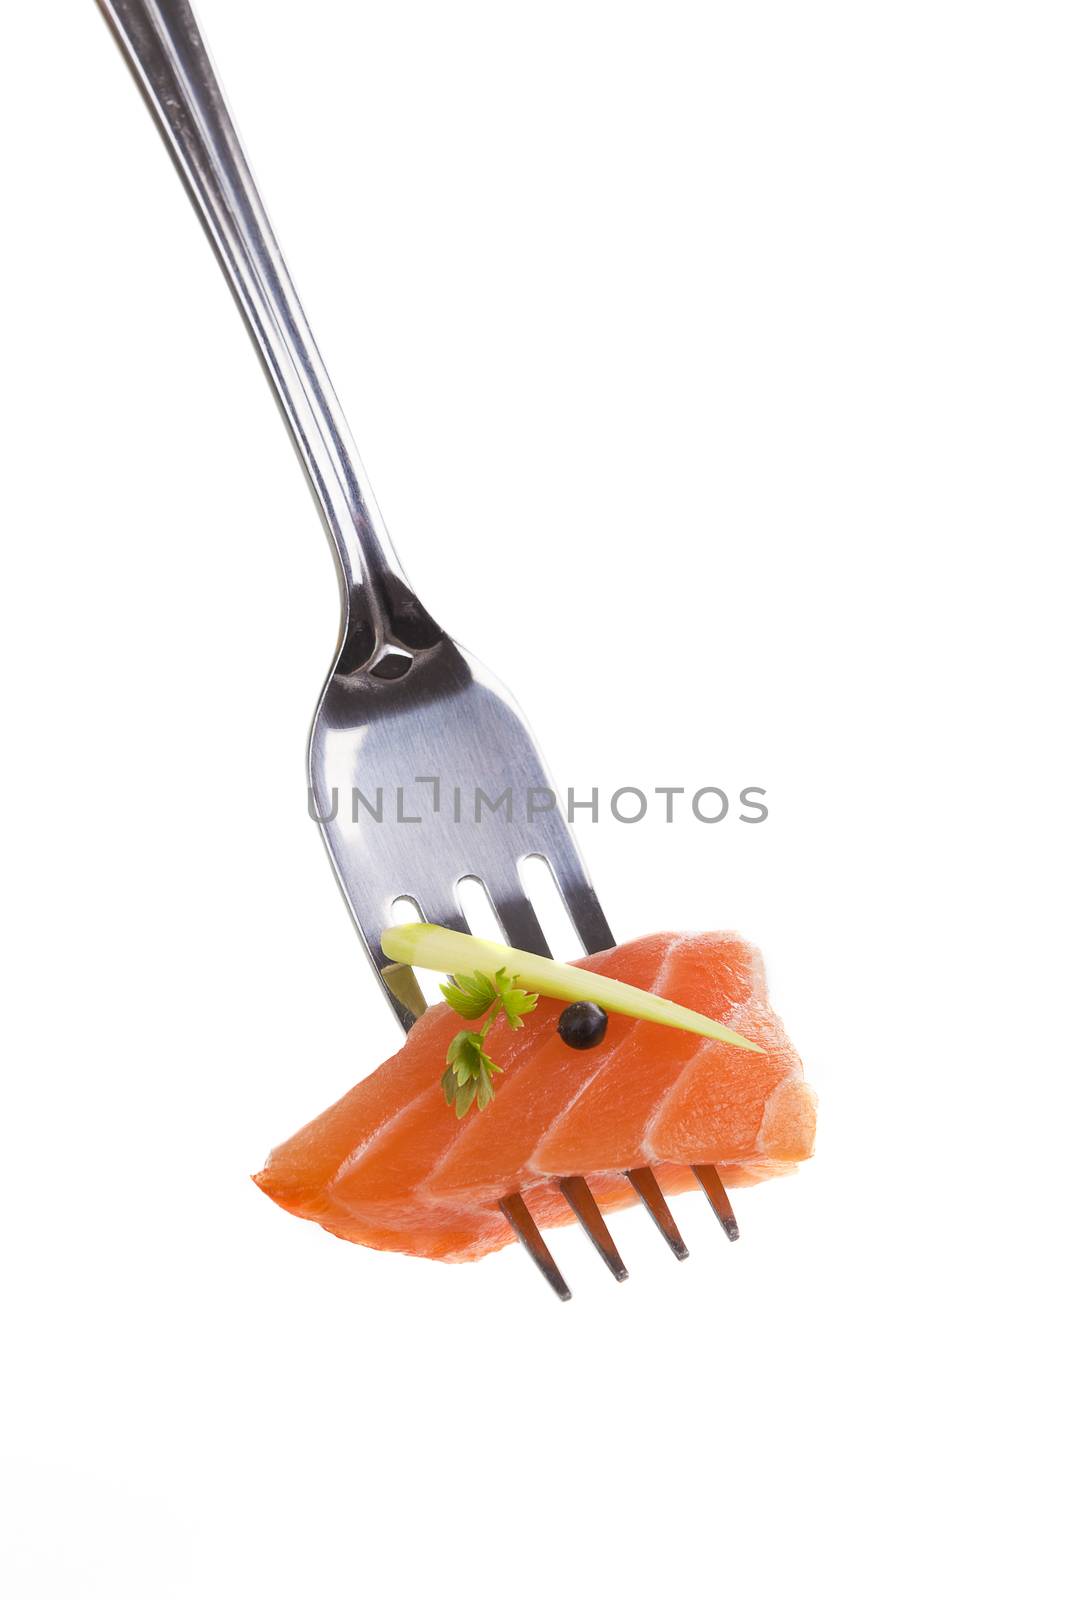 Salmon bite. by eskymaks